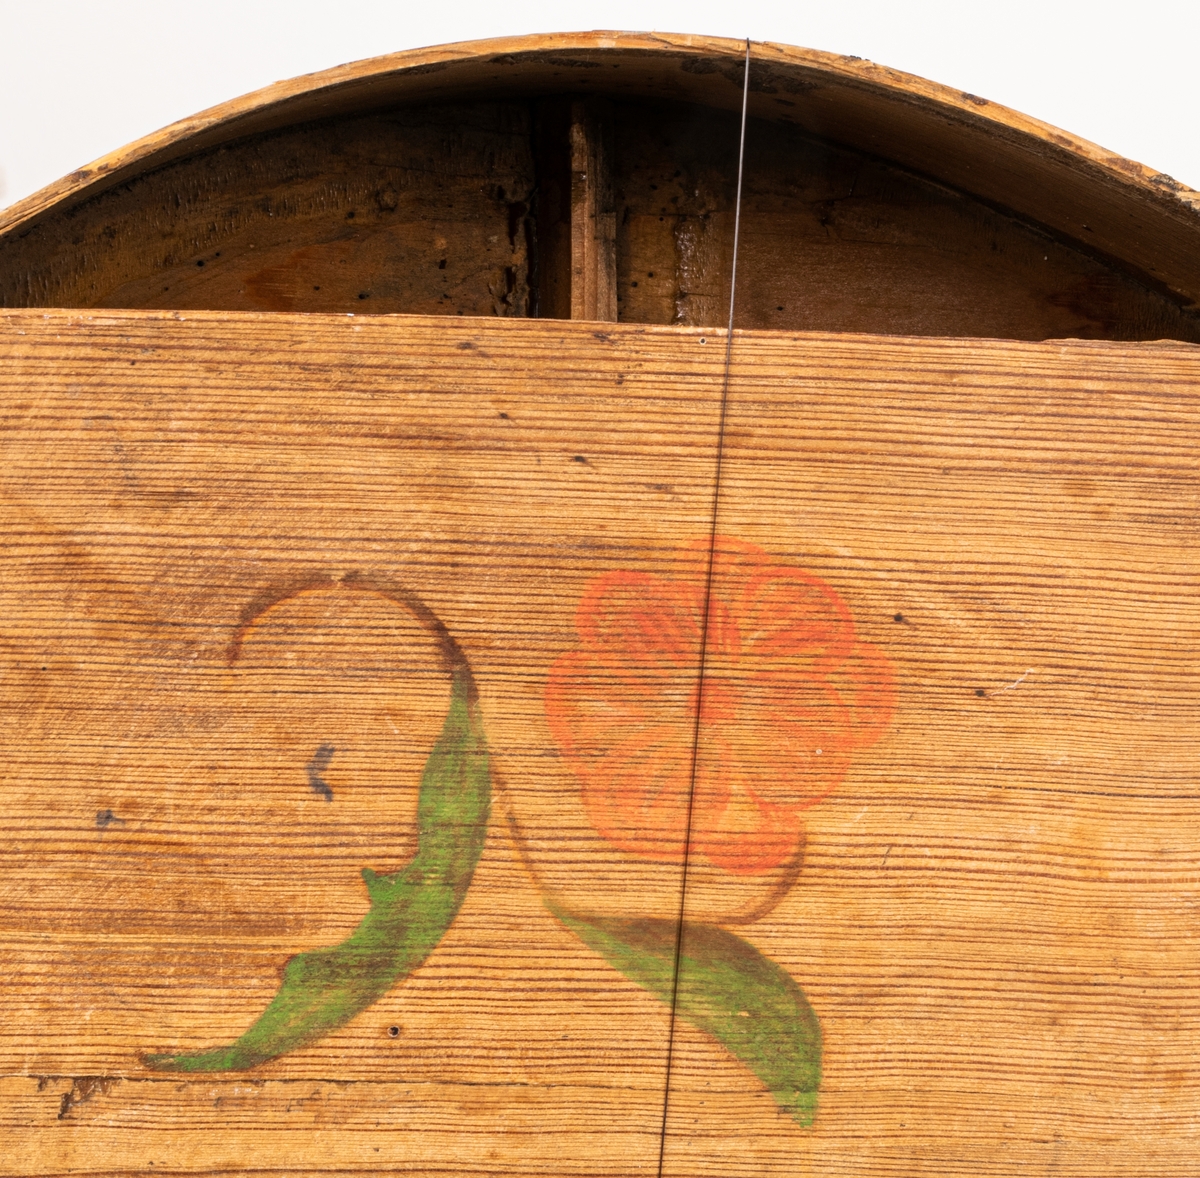 Hummel, stråkcittra, flera strängar saknas. Handtagsänden grön, på ljudlådans baksida är målat en blomma; röd med gröna blad.

På insidan av ljudlådan är klistrad en papperslapp med textning "Torsåker 1700".